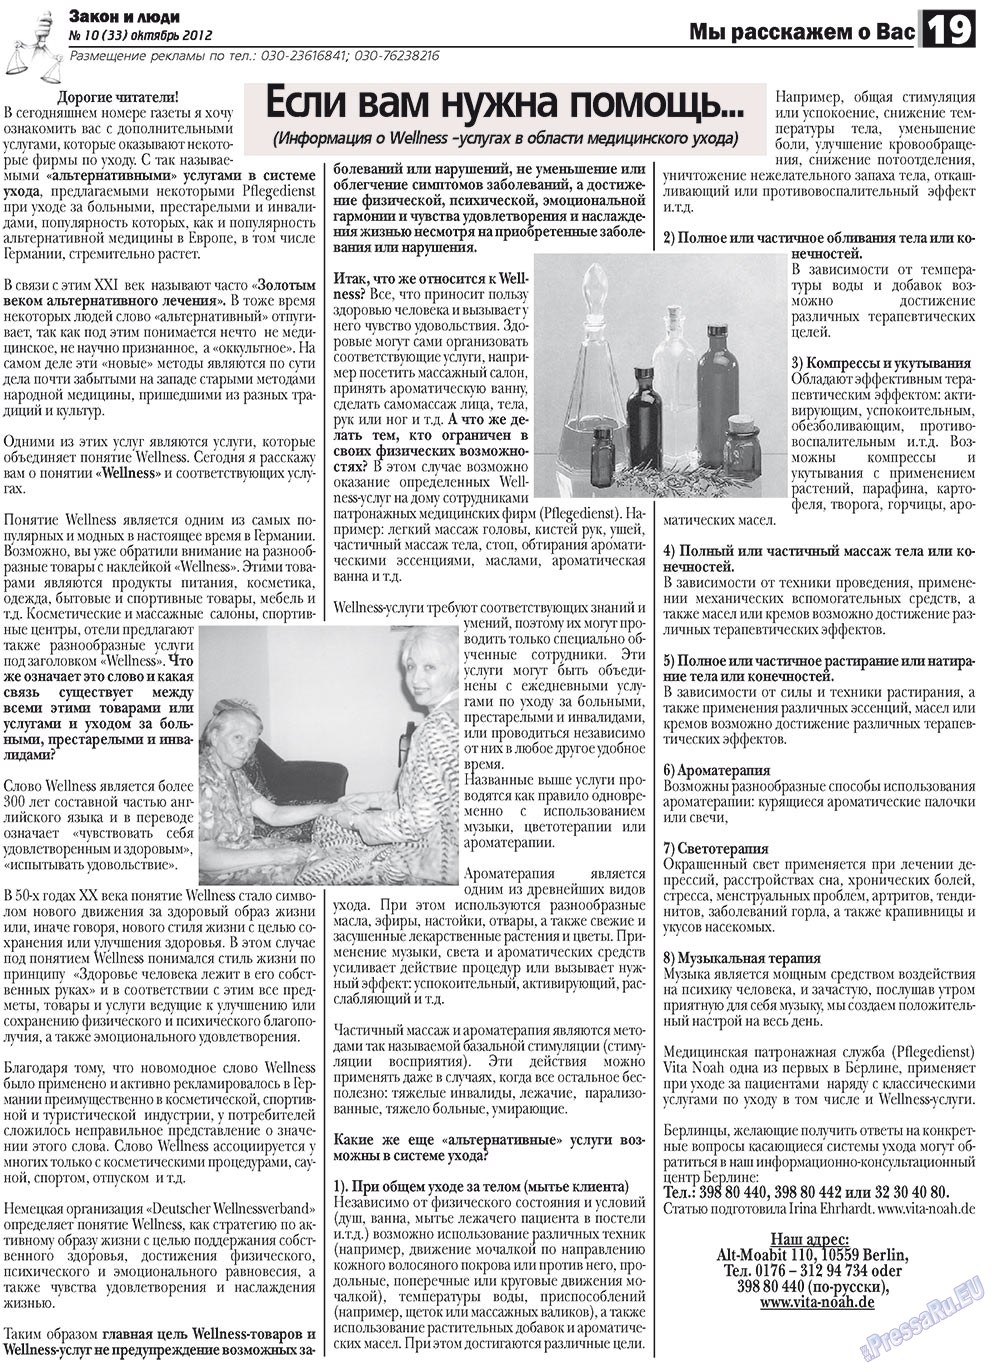 Закон и люди, газета. 2012 №10 стр.19